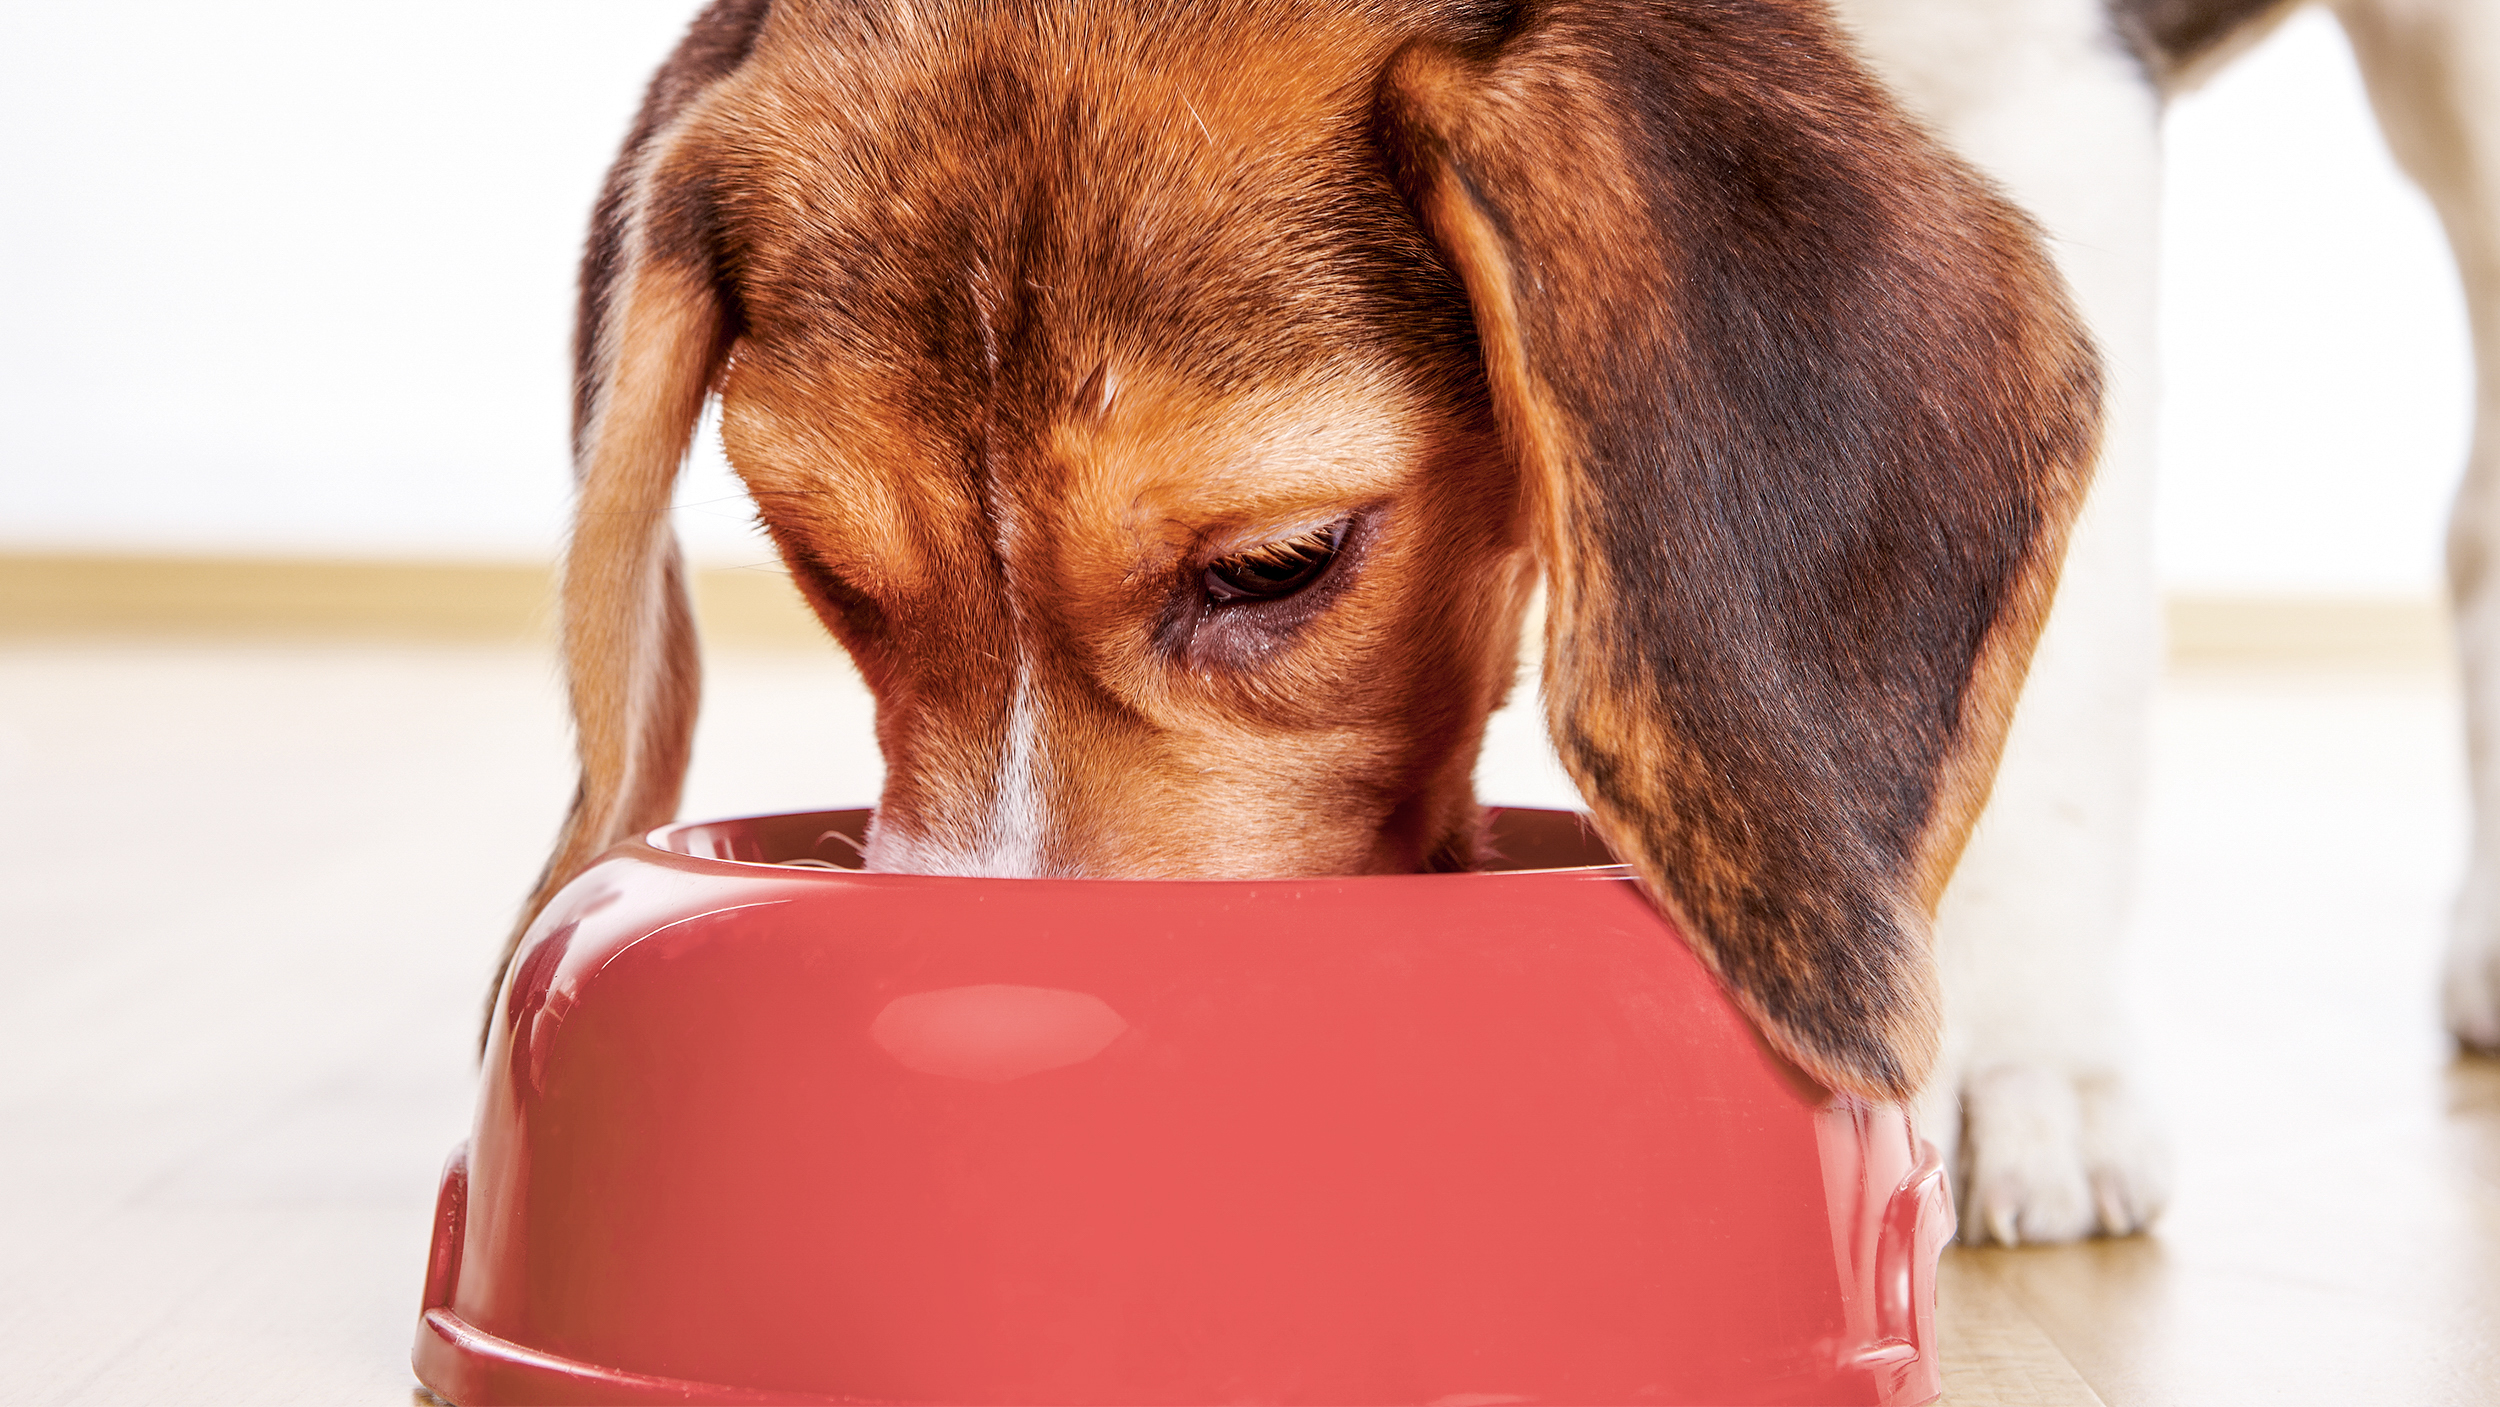 Cachorro Beagle de pie en el interior comiendo de un tazón rojo.